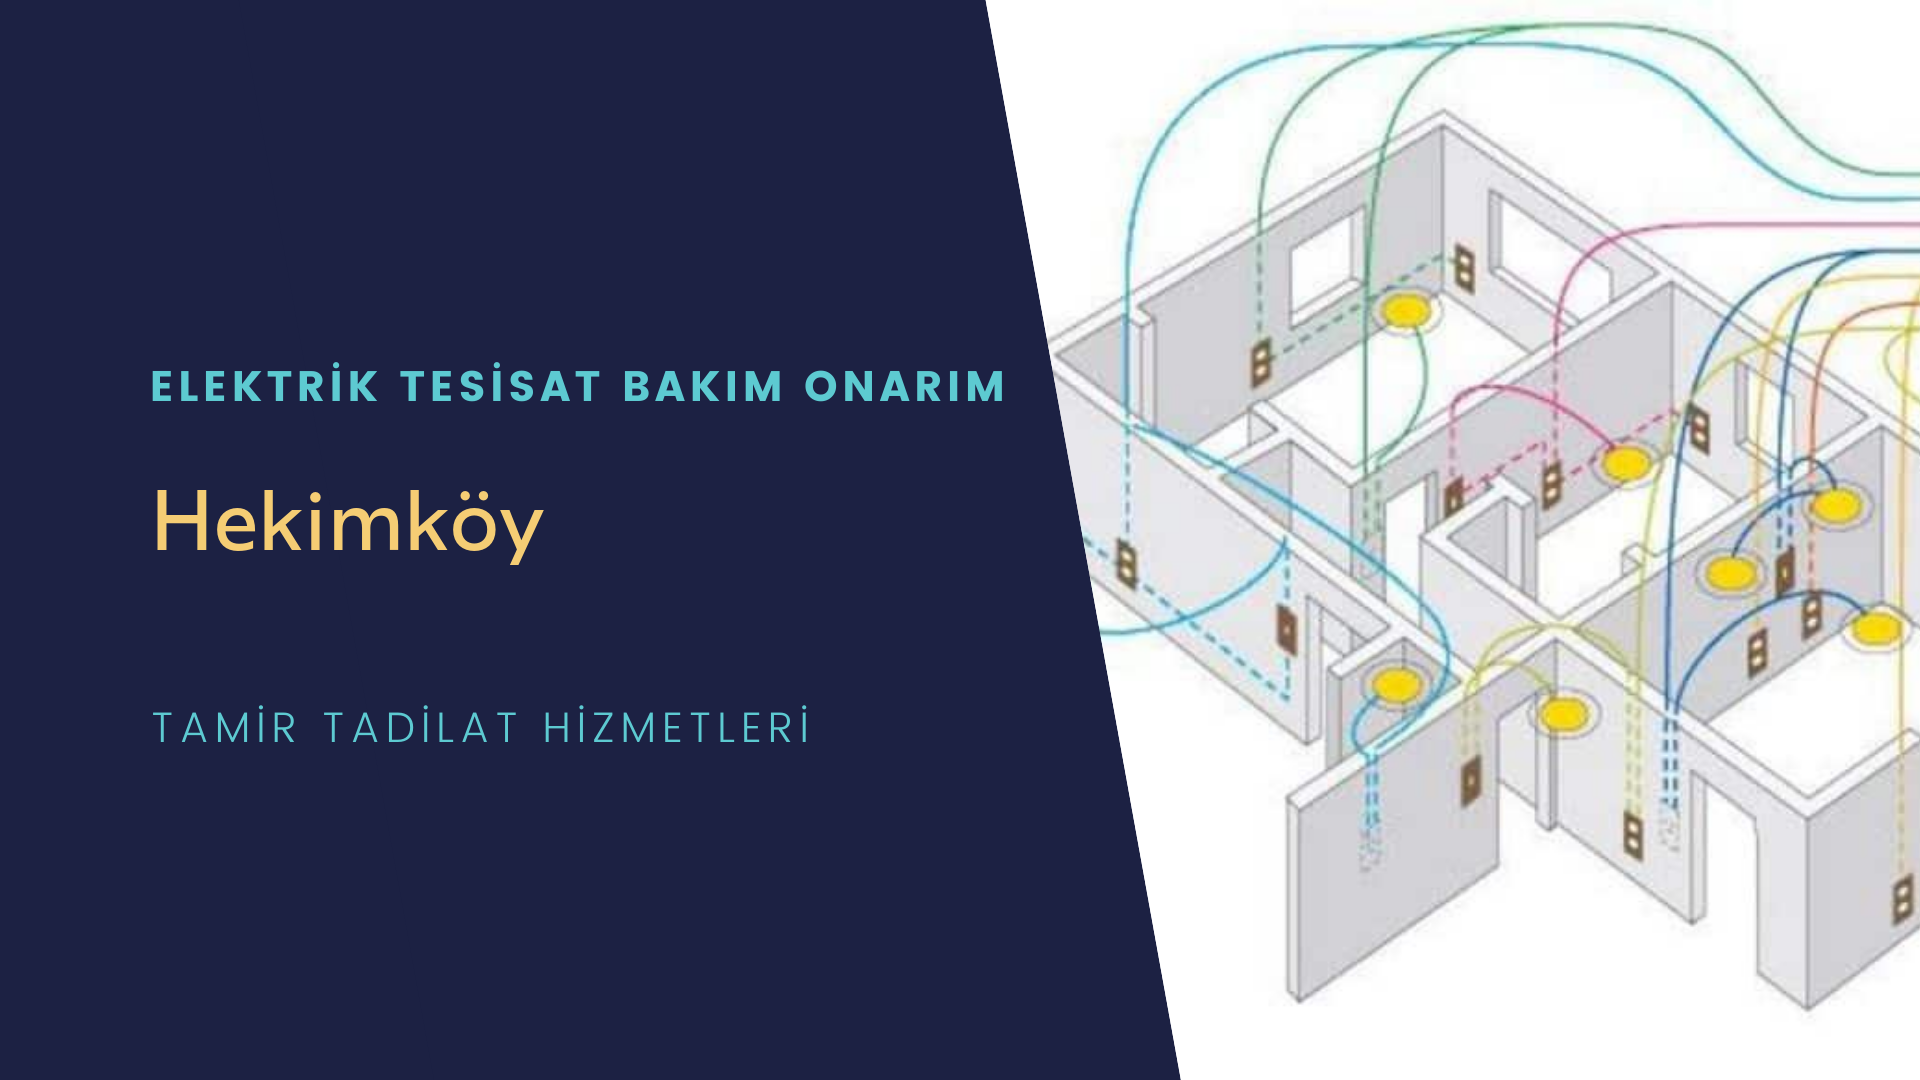 Hekimköy'de elektrik tesisatı ustalarımı arıyorsunuz doğru adrestenizi Hekimköy elektrik tesisatı ustalarımız 7/24 sizlere hizmet vermekten mutluluk duyar.